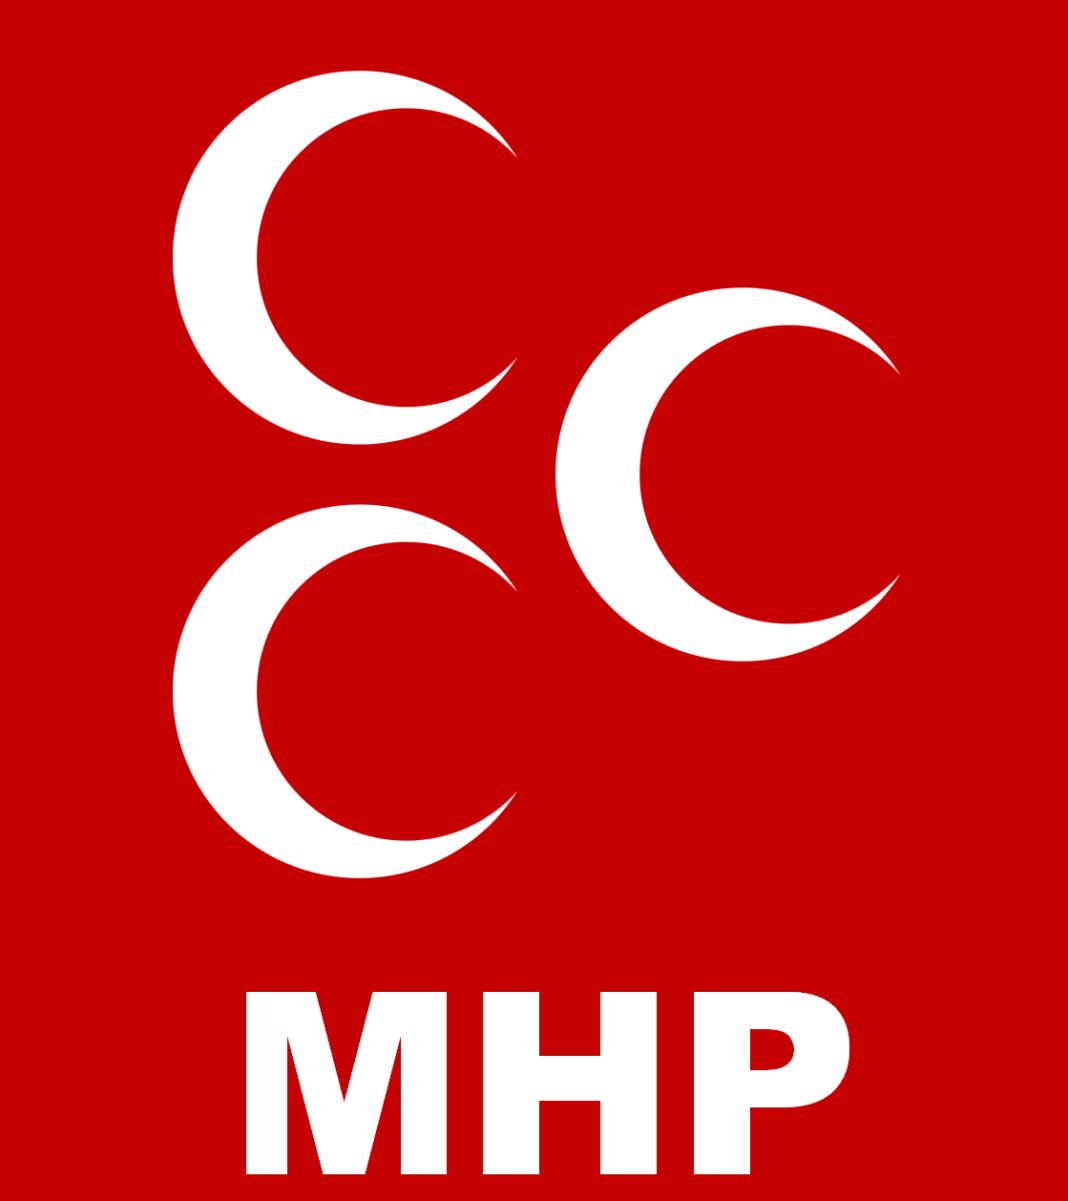 Hbs’den İstanbul anketi: AKP ile CHP arasındaki fark 2 puan 7